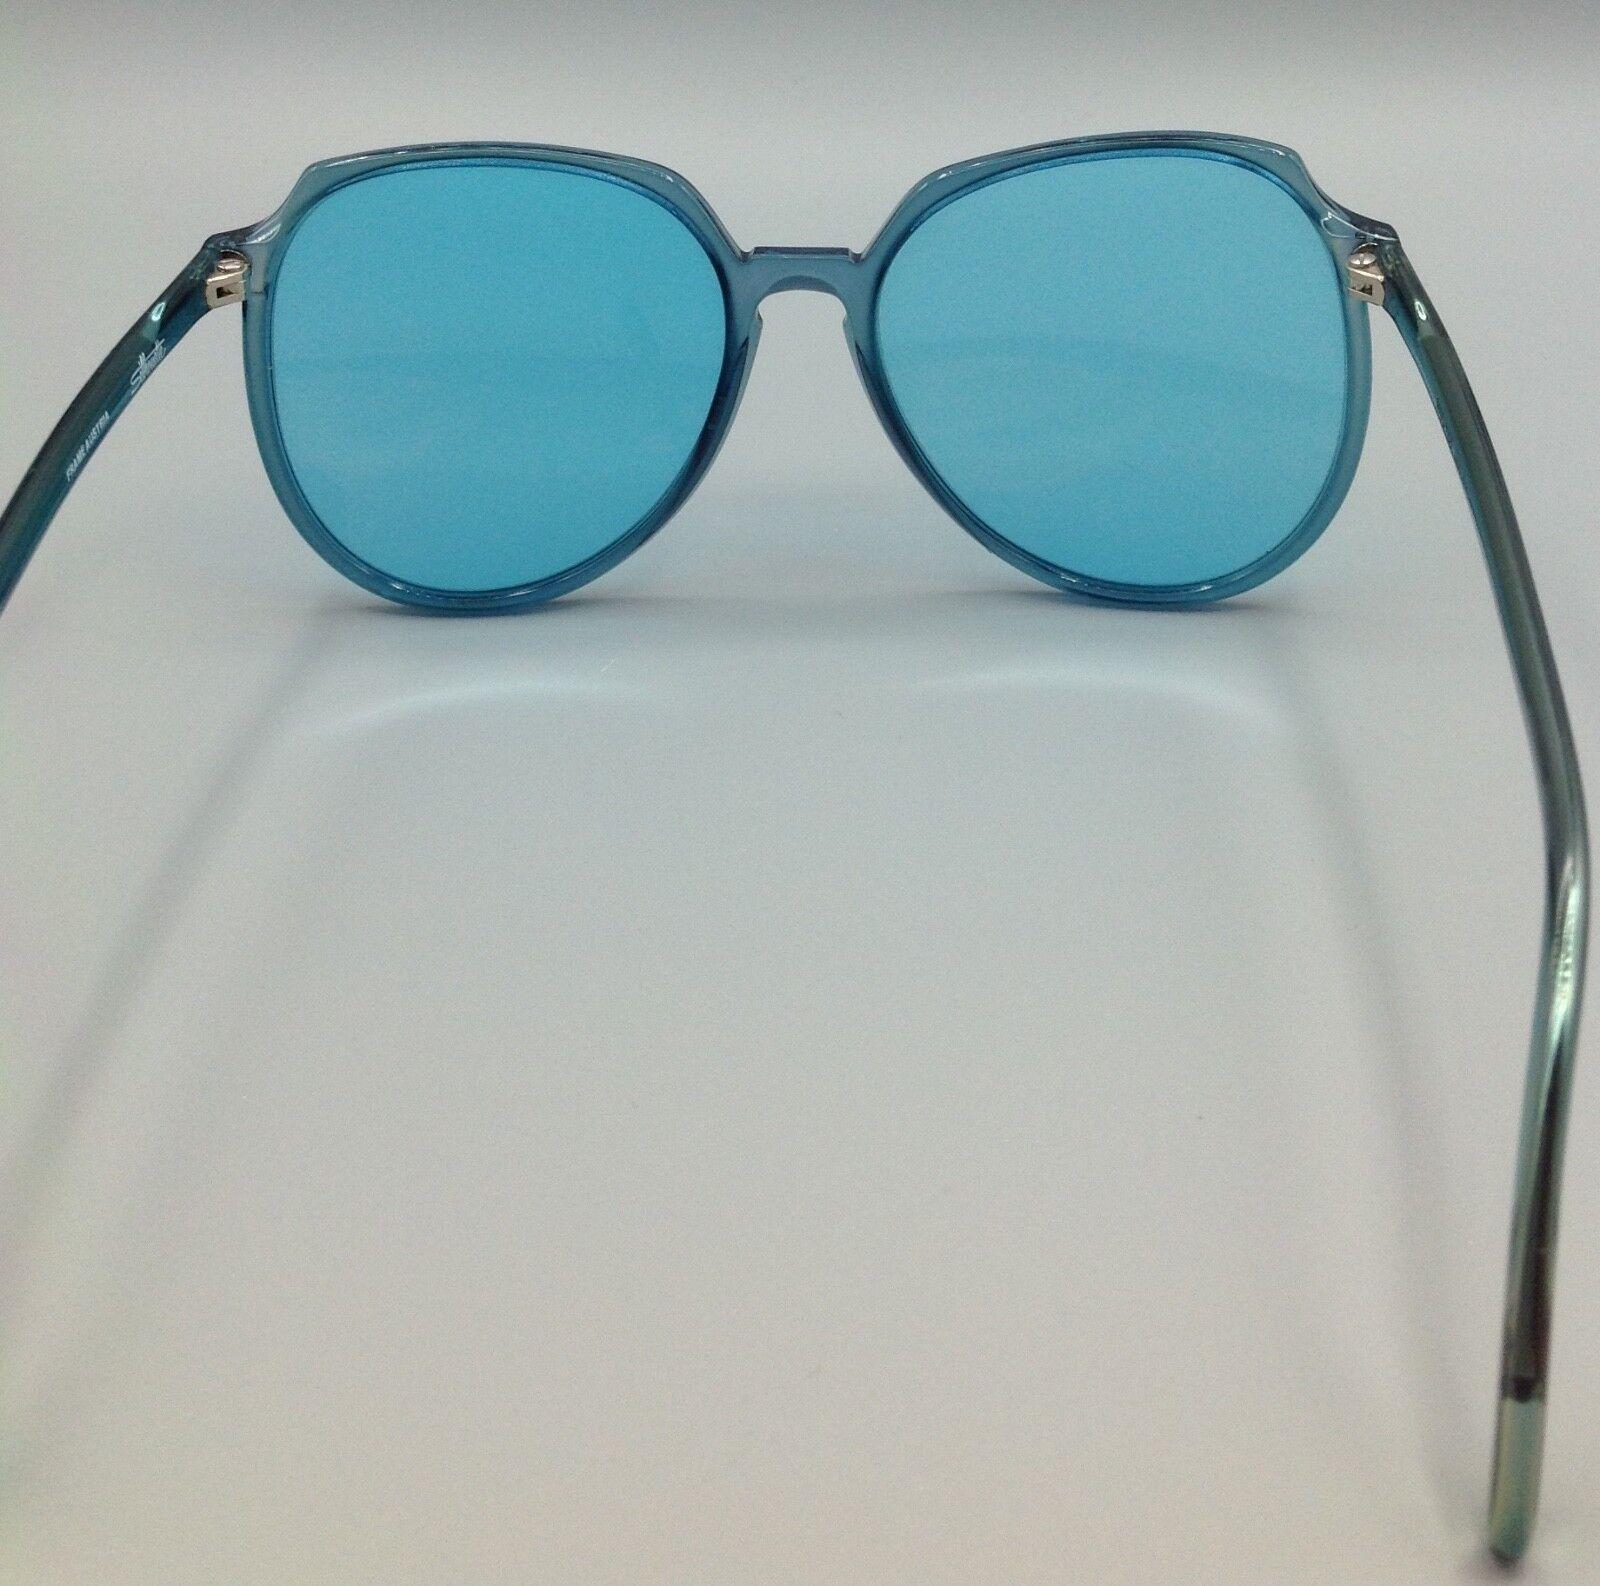 SILHOUETTE vintage occhiale da sole model 1101 made in Austria SUNGLASSES SONNENBRILLEN